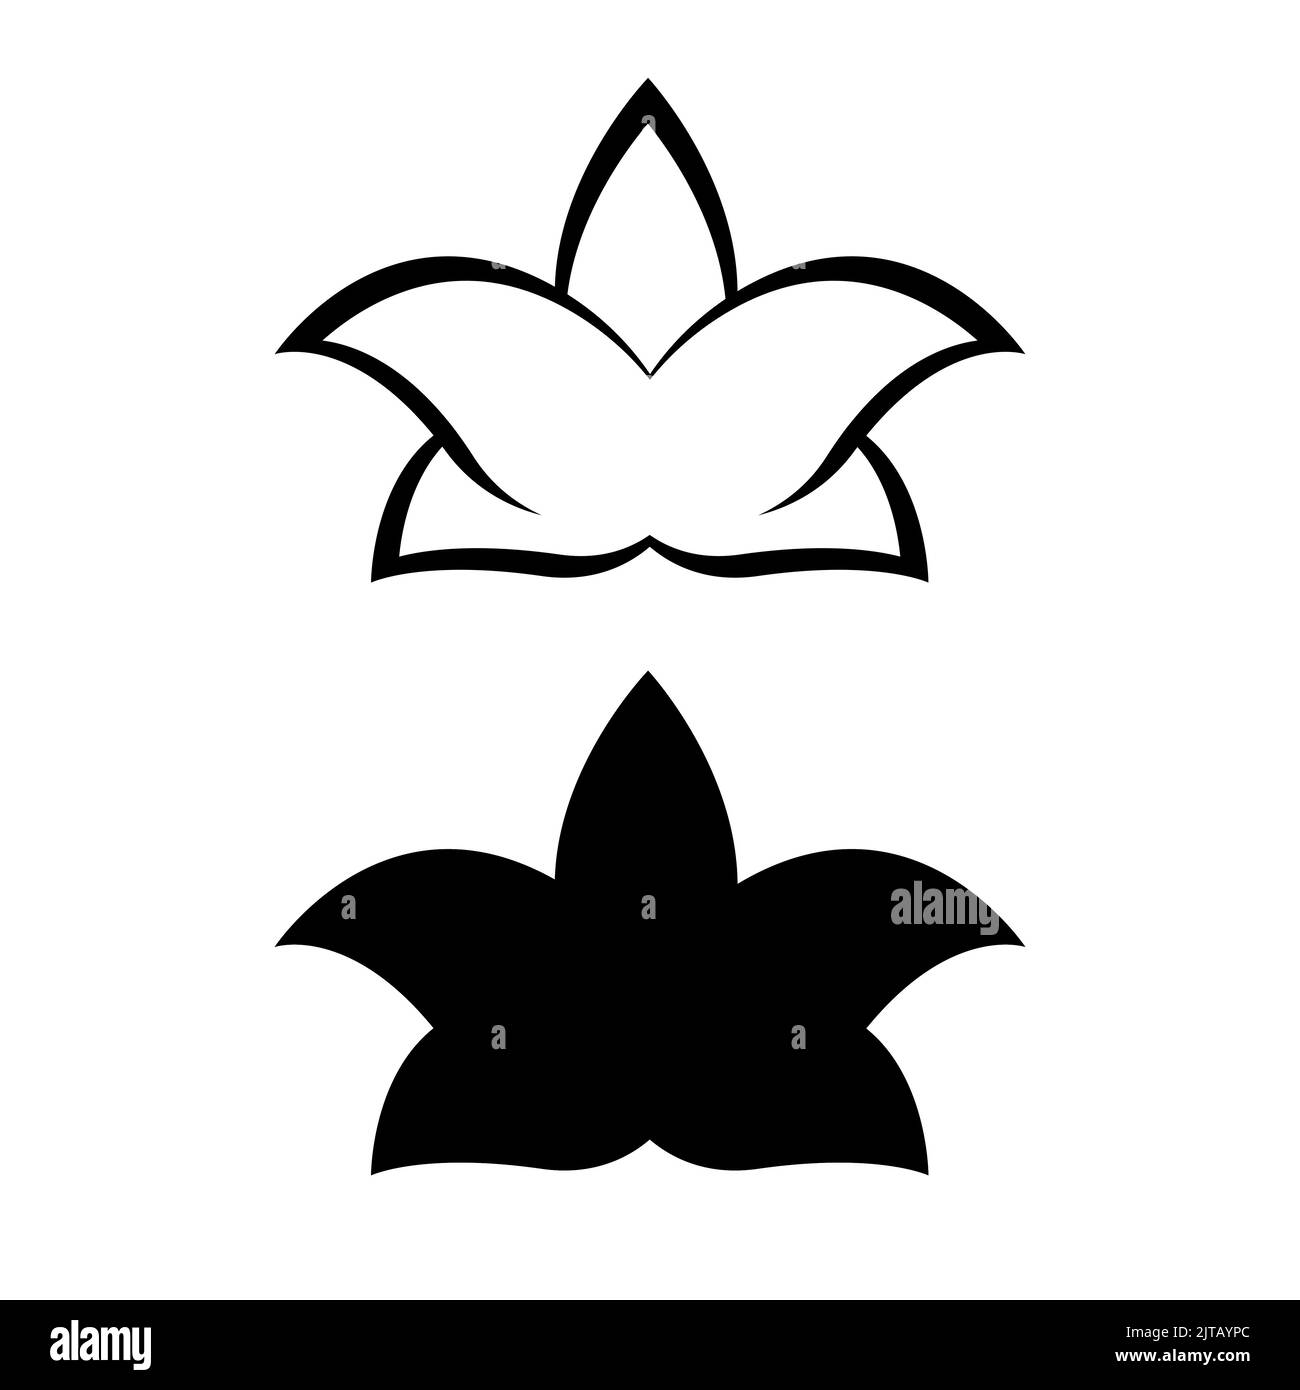 Ensemble lys silhouette, logo ou tatouage, fleur décorative isolée sur fond blanc. Illustration florale, nature. Illustration vectorielle Illustration de Vecteur